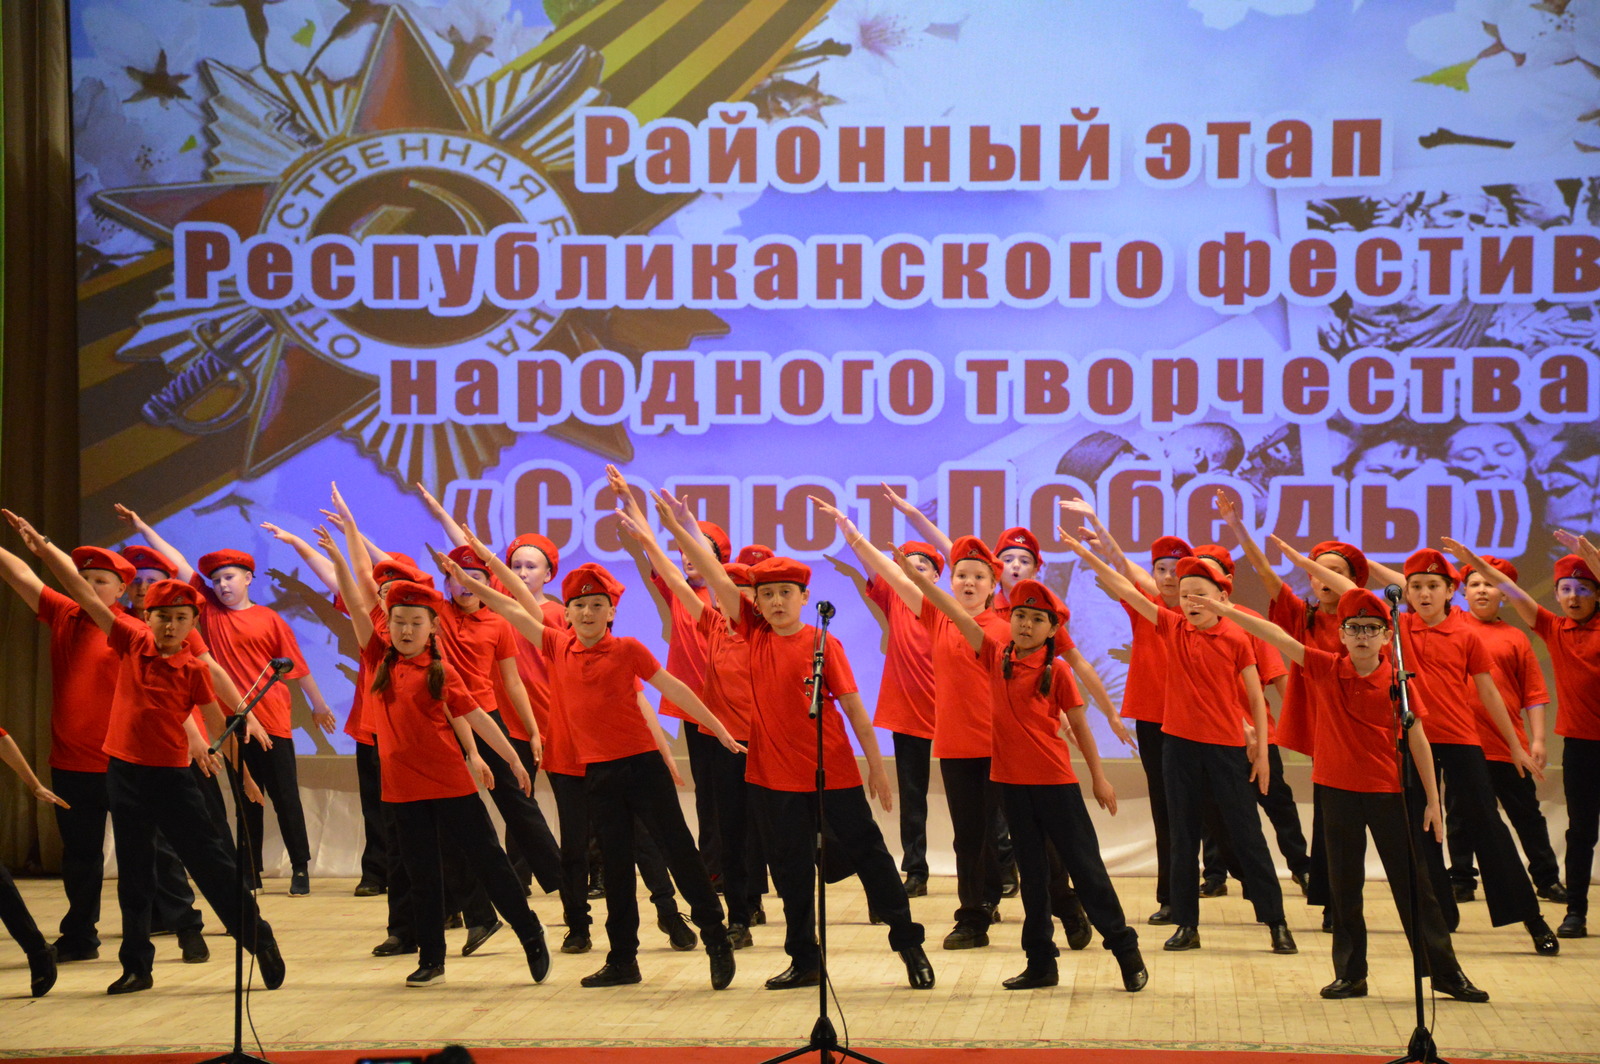 Во Дворце культуры состоялся фестиваль народного творчества "Салют Победы"